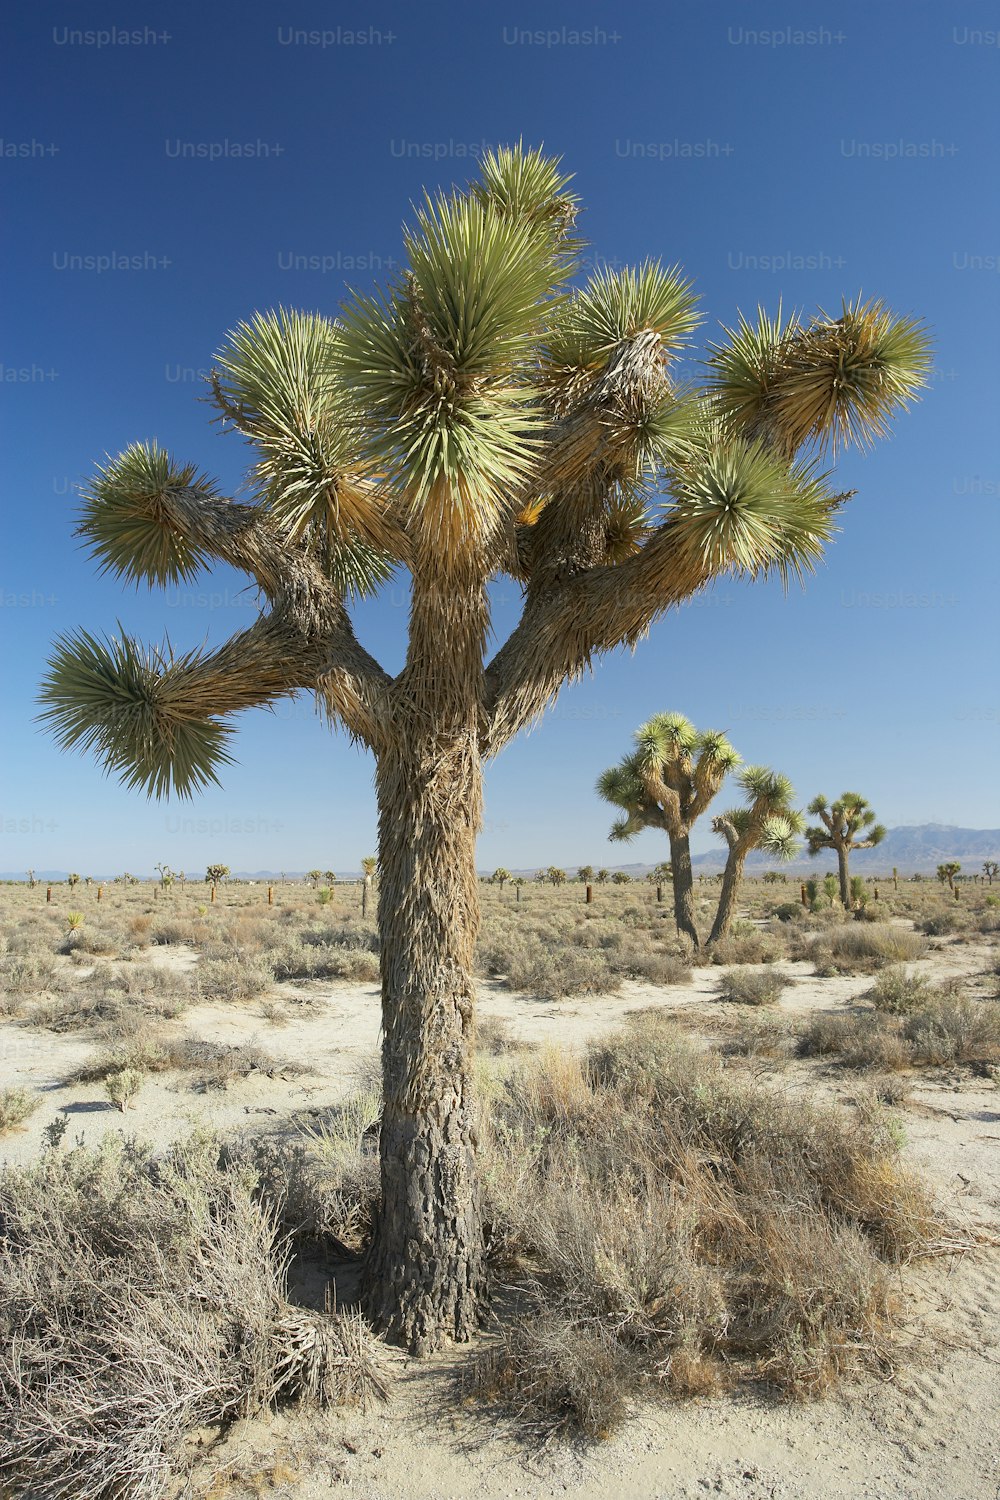 사막 한가운데에 있는 조슈아 나무